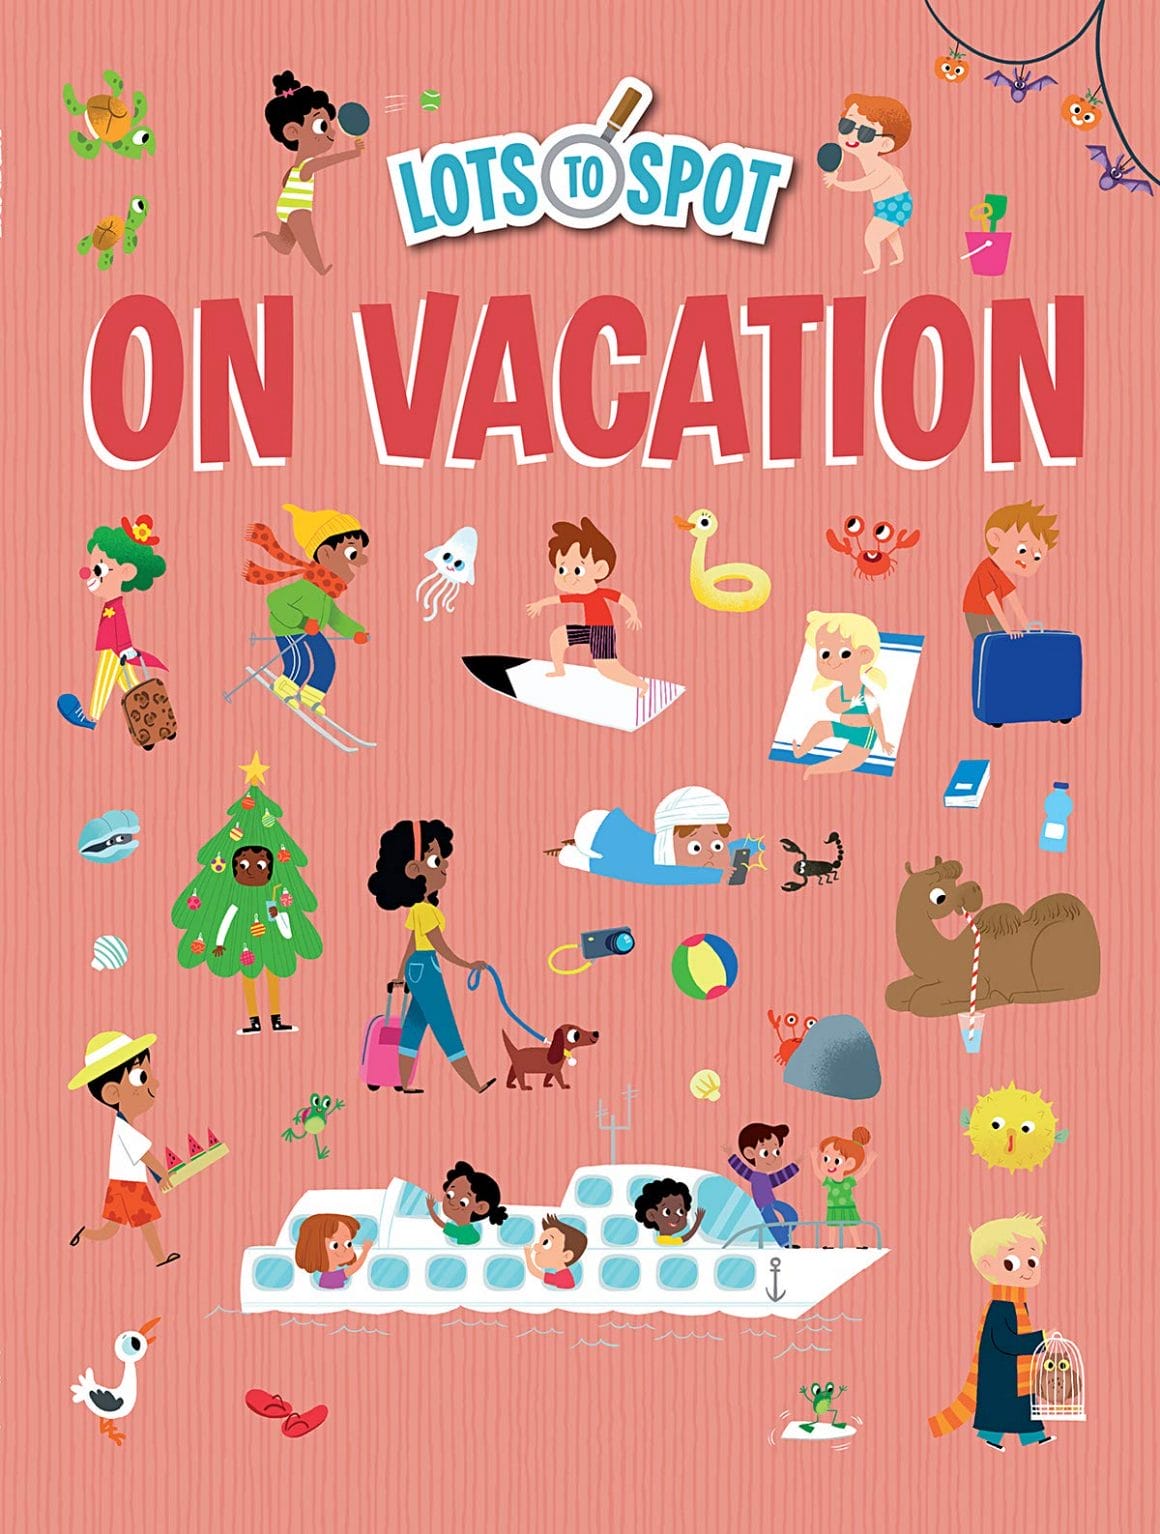 Lots to spot, on vacation par Genie Espinosa en 2019 (couverture de Lots to Spot on vacation). Couverture rose  avec différents petits dessins de personnages ou d'éléments à retrouver dans le livre. 